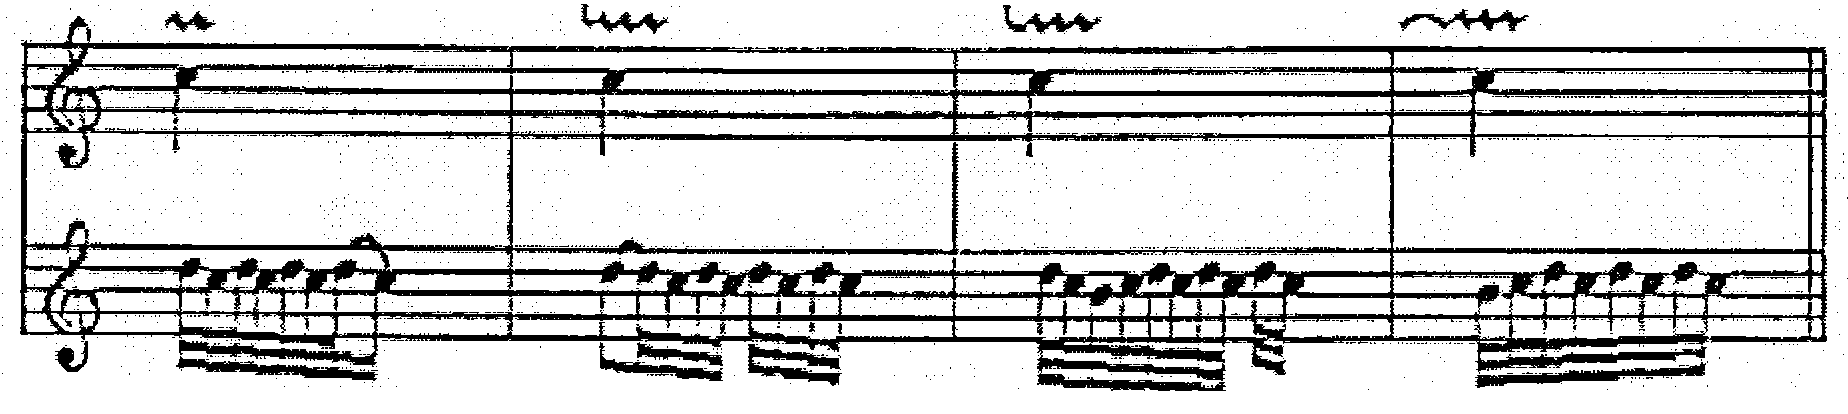 14 Tril (Trillo): Barok dönem müziğinde, çalış şekline göre kısa ve uzun olmak üzere iki şekli vardır. Kullanım şekilleri değişiklik göstermiştir.